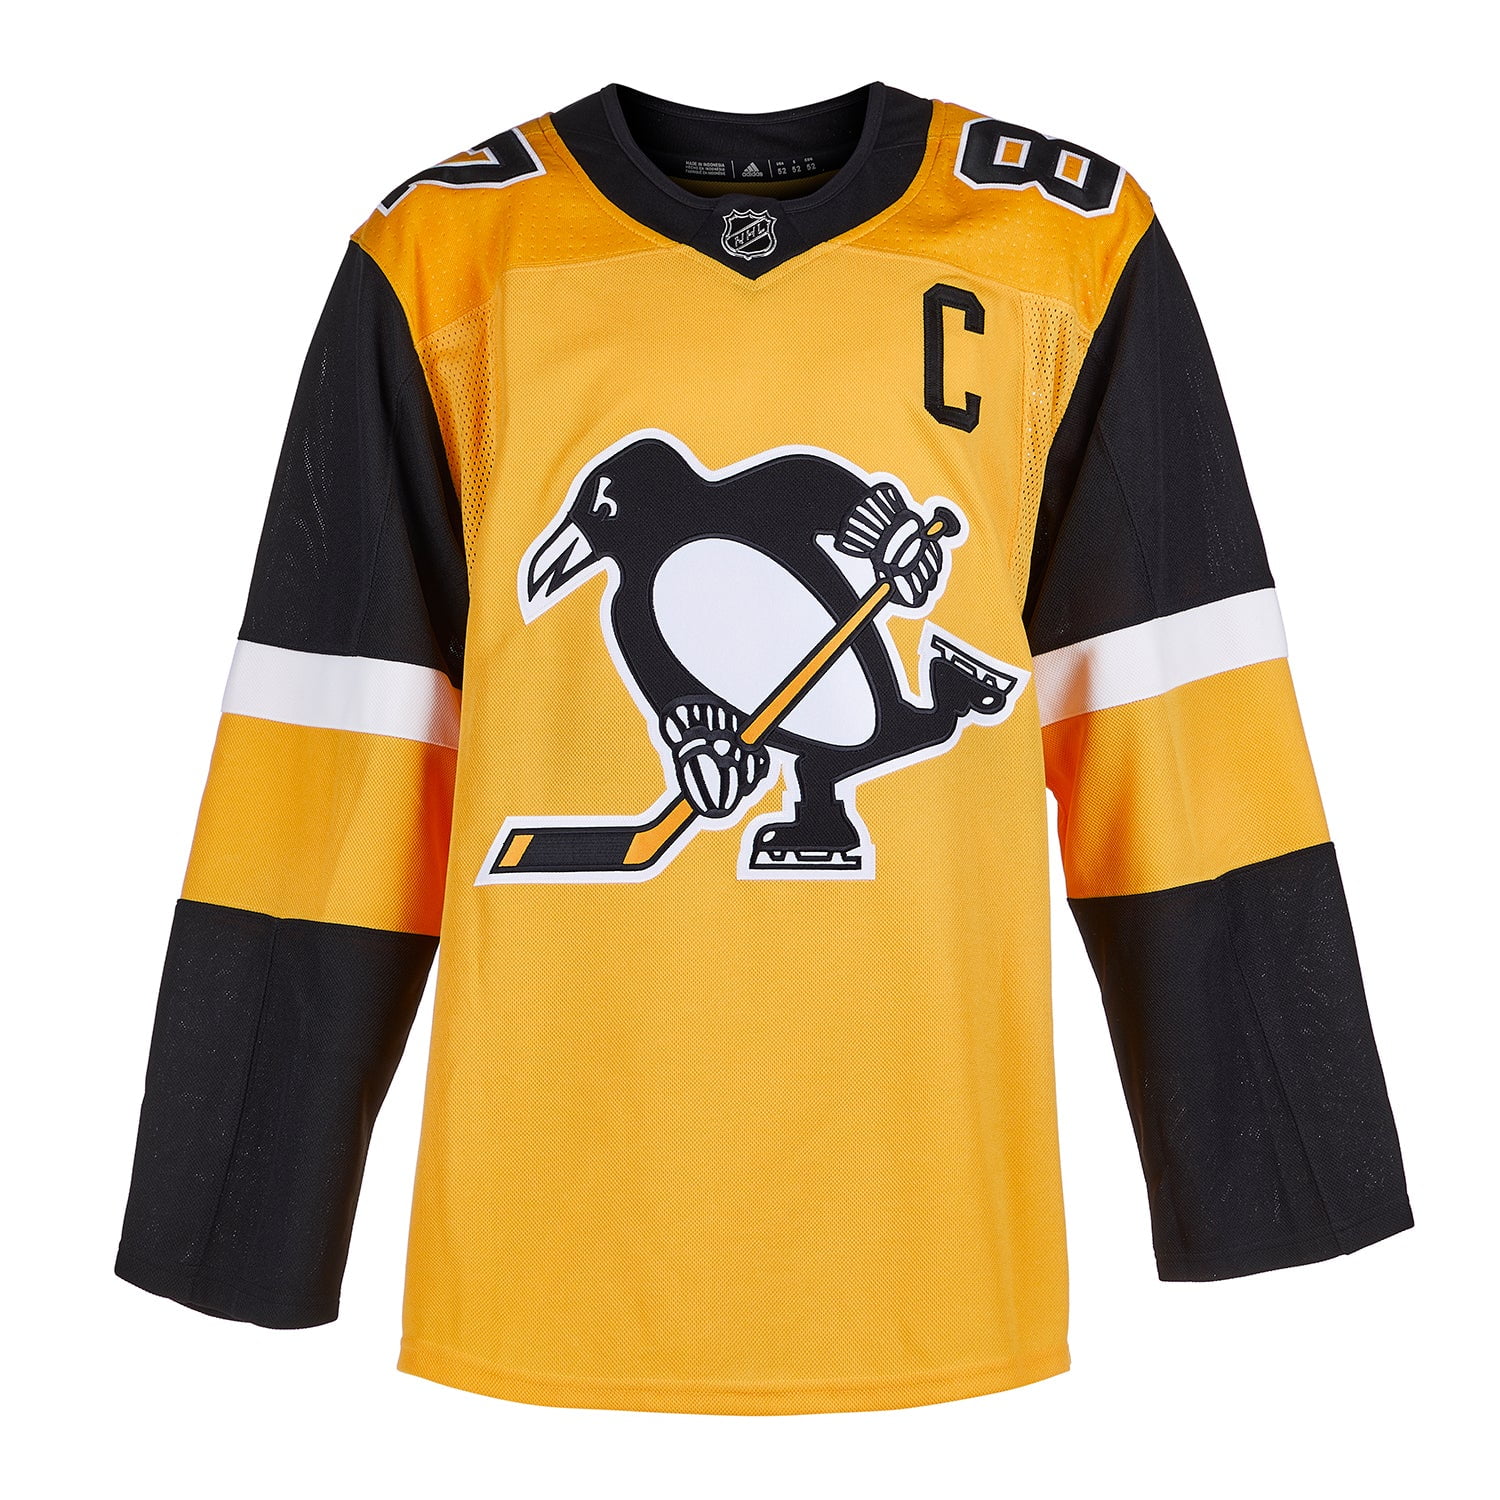 Sidney Crosby Signed Penguins Jersey (Frameworth Hologram